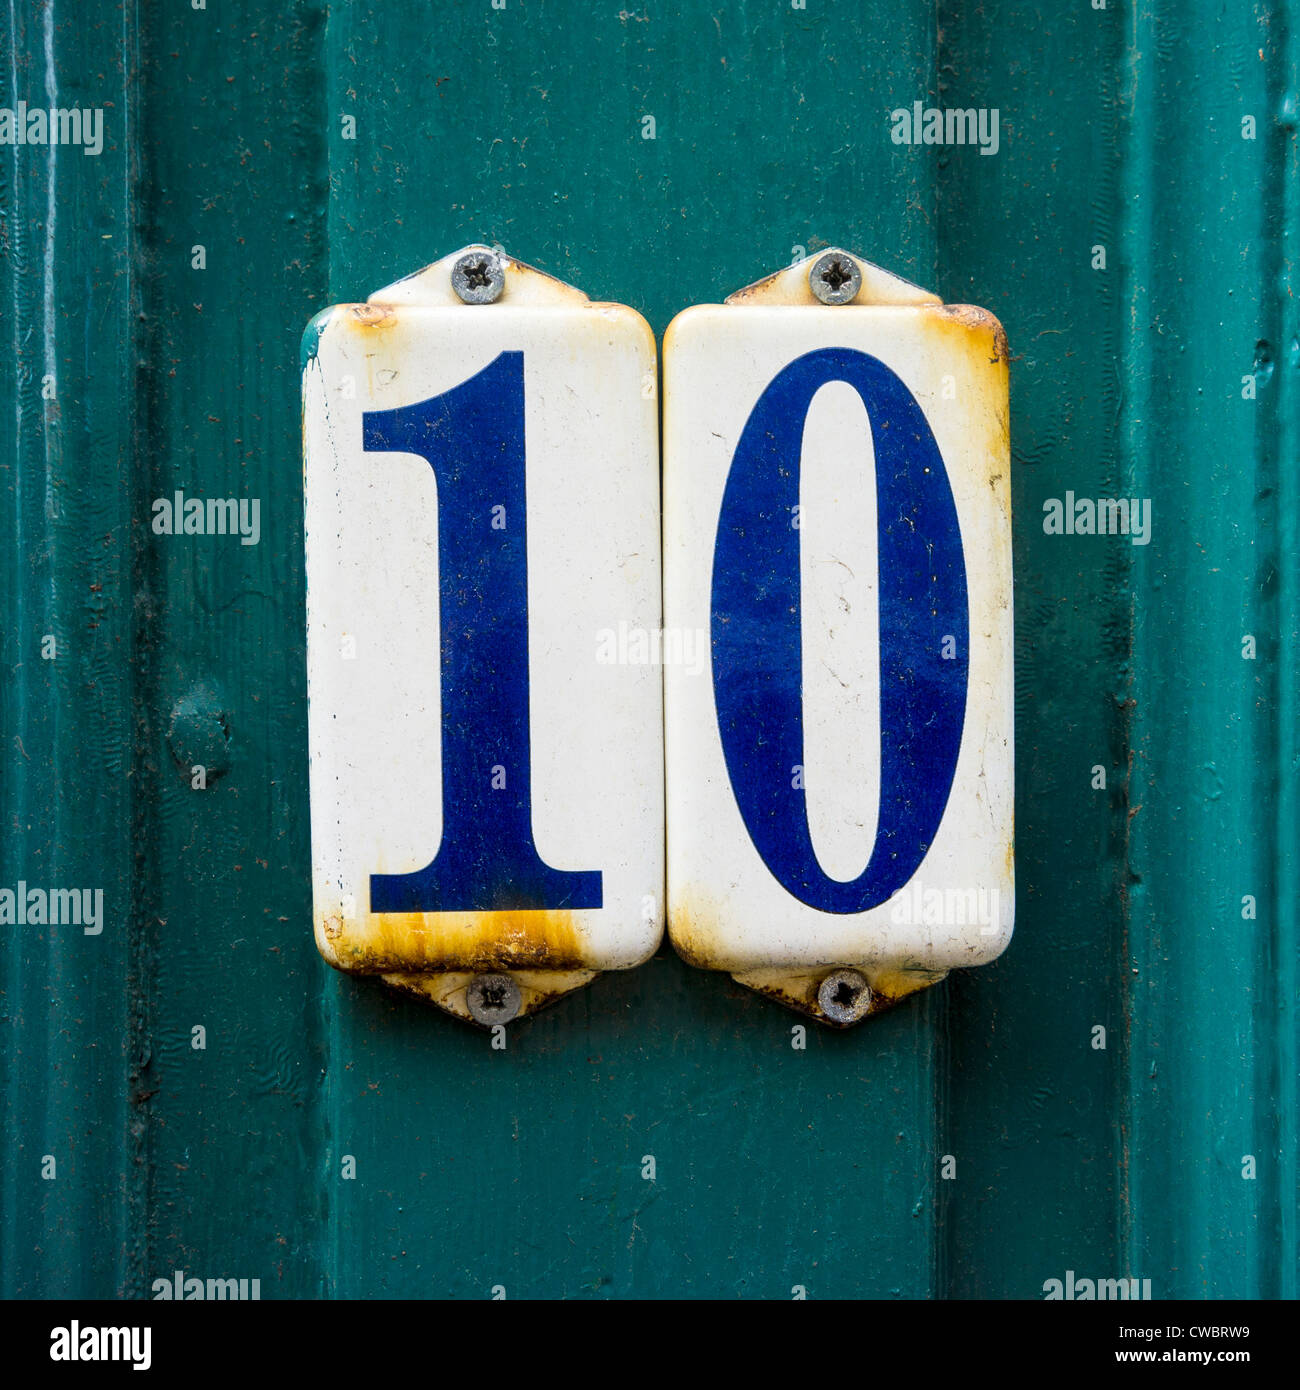 El número de la casa diez separados en dos placas esmaltadas. Foto de stock